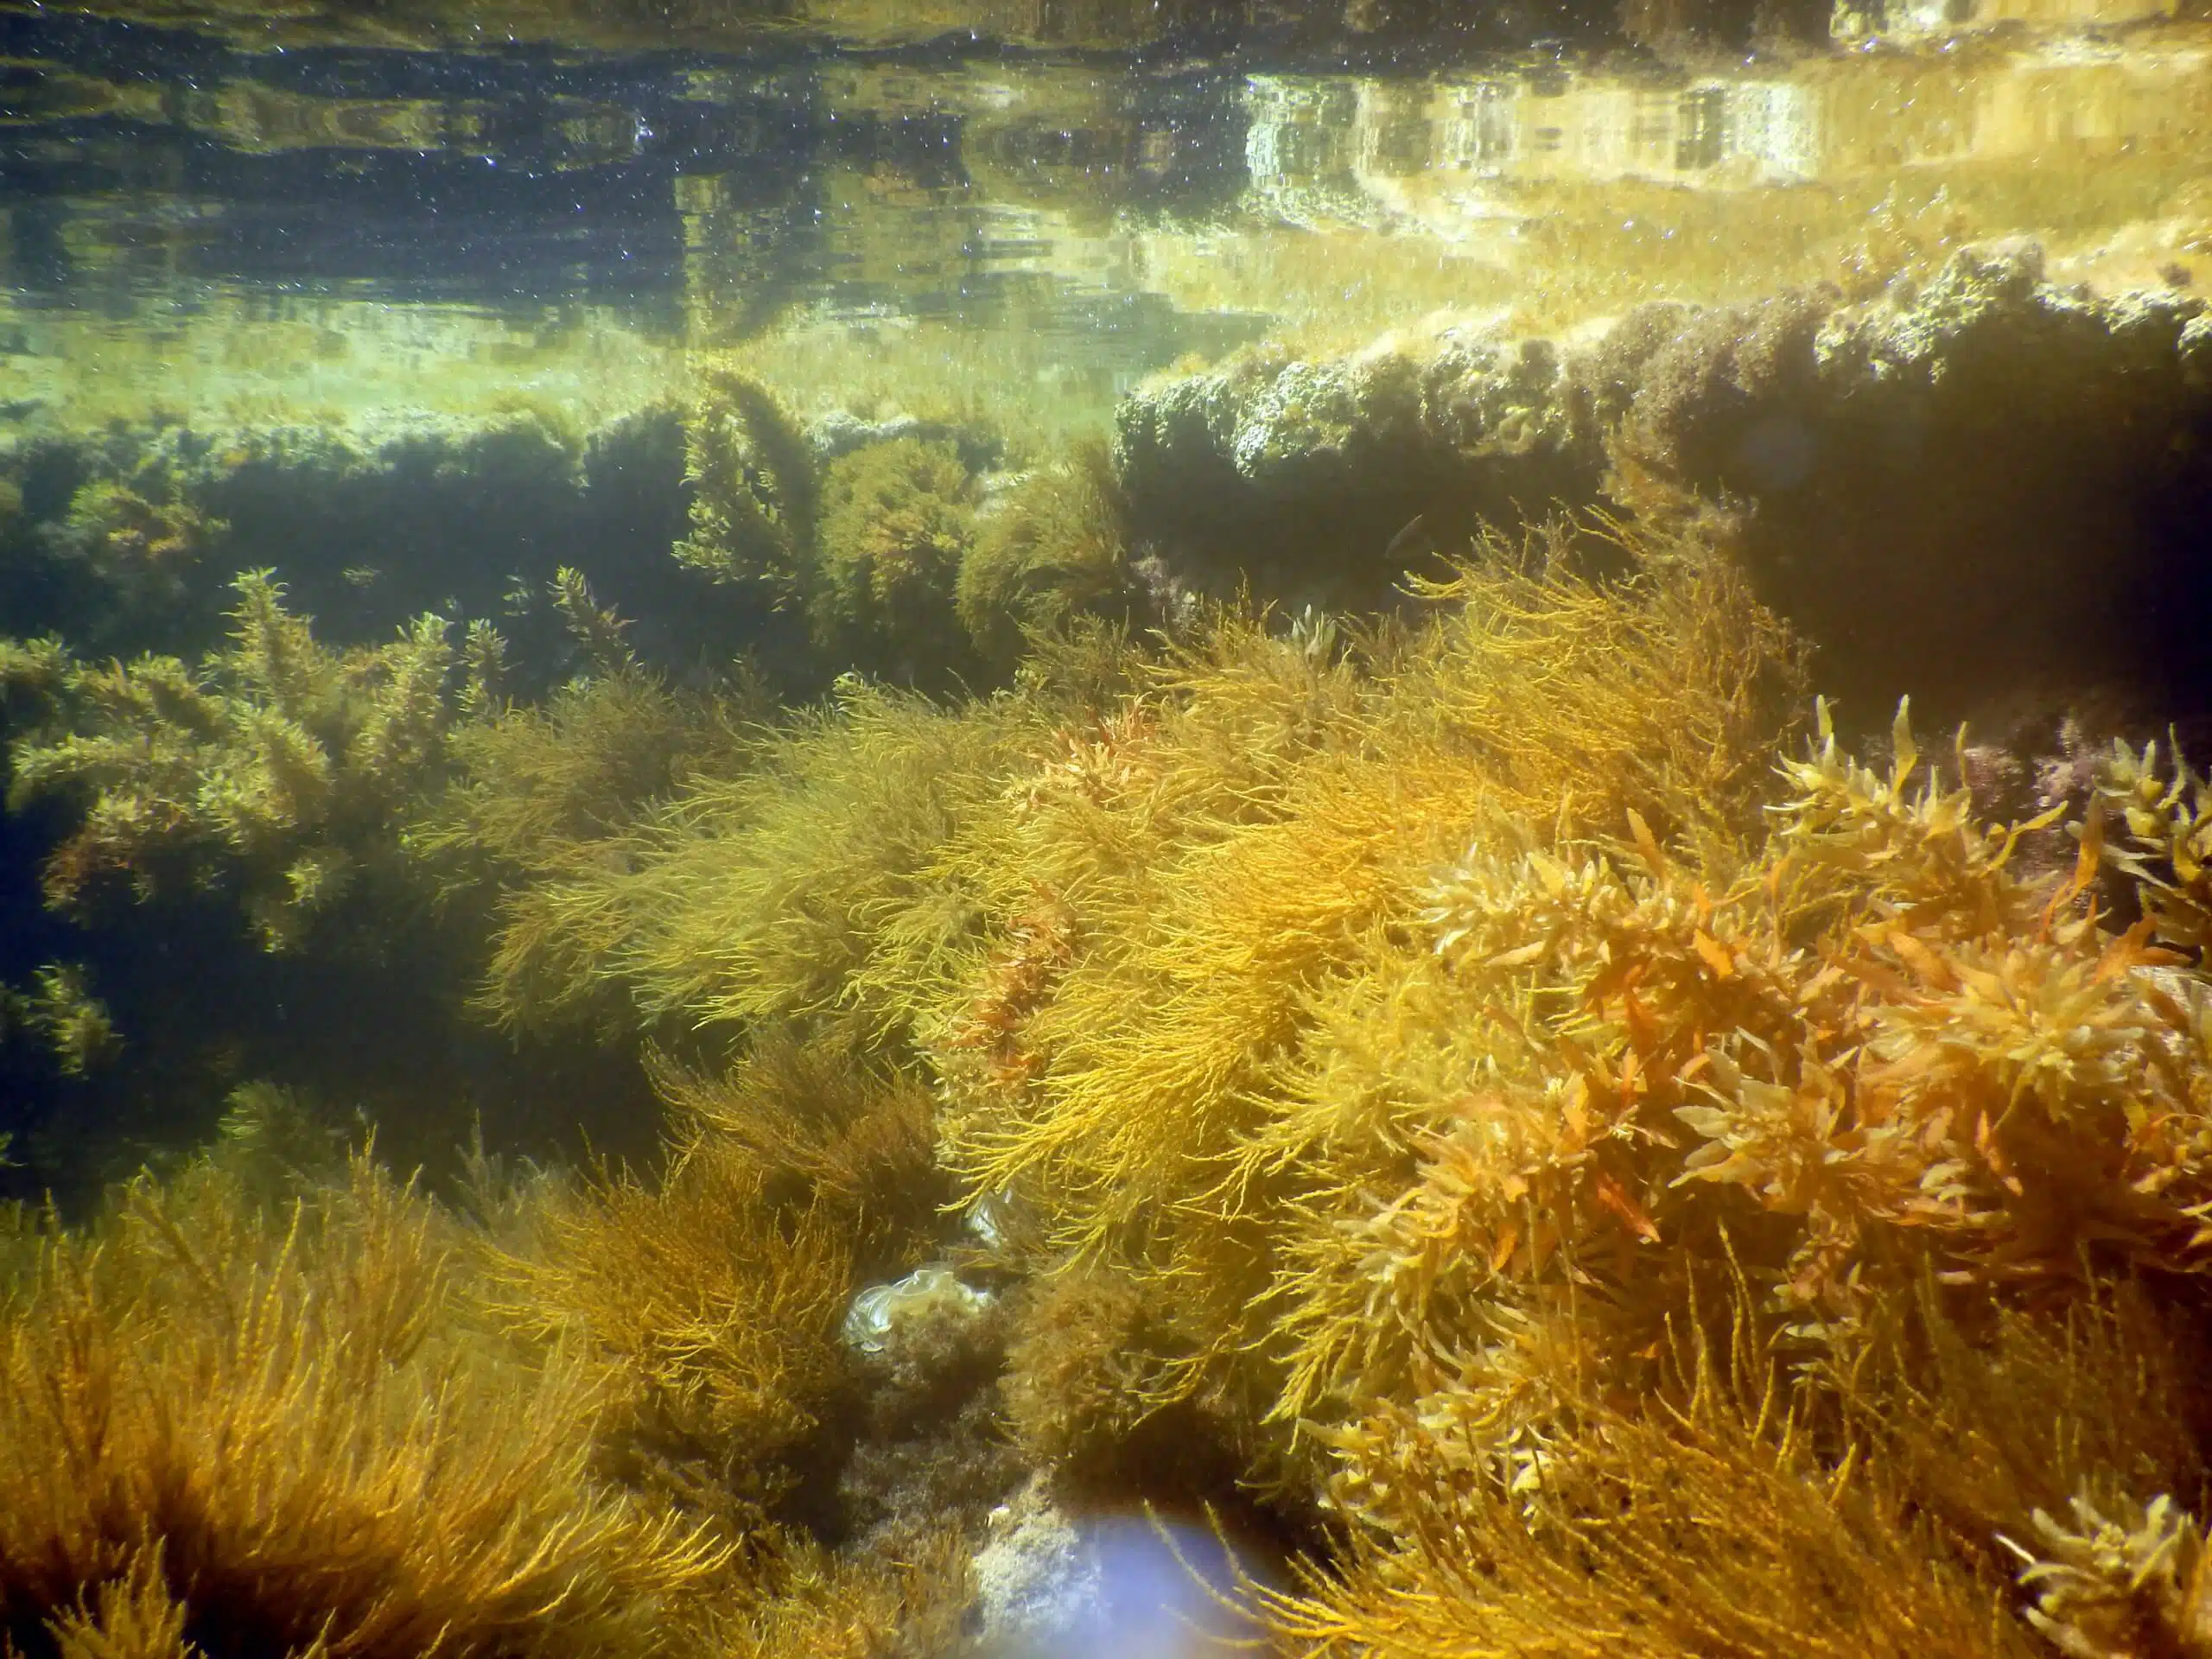 "تعد الطحالب عنصرا أساسيا في المجتمع البحري، لأنها تشكل موطنا تعيش فيه عشرات بل مئات الأنواع من الكائنات البحرية الصغيرة." الصورة: مختبر ريلوف